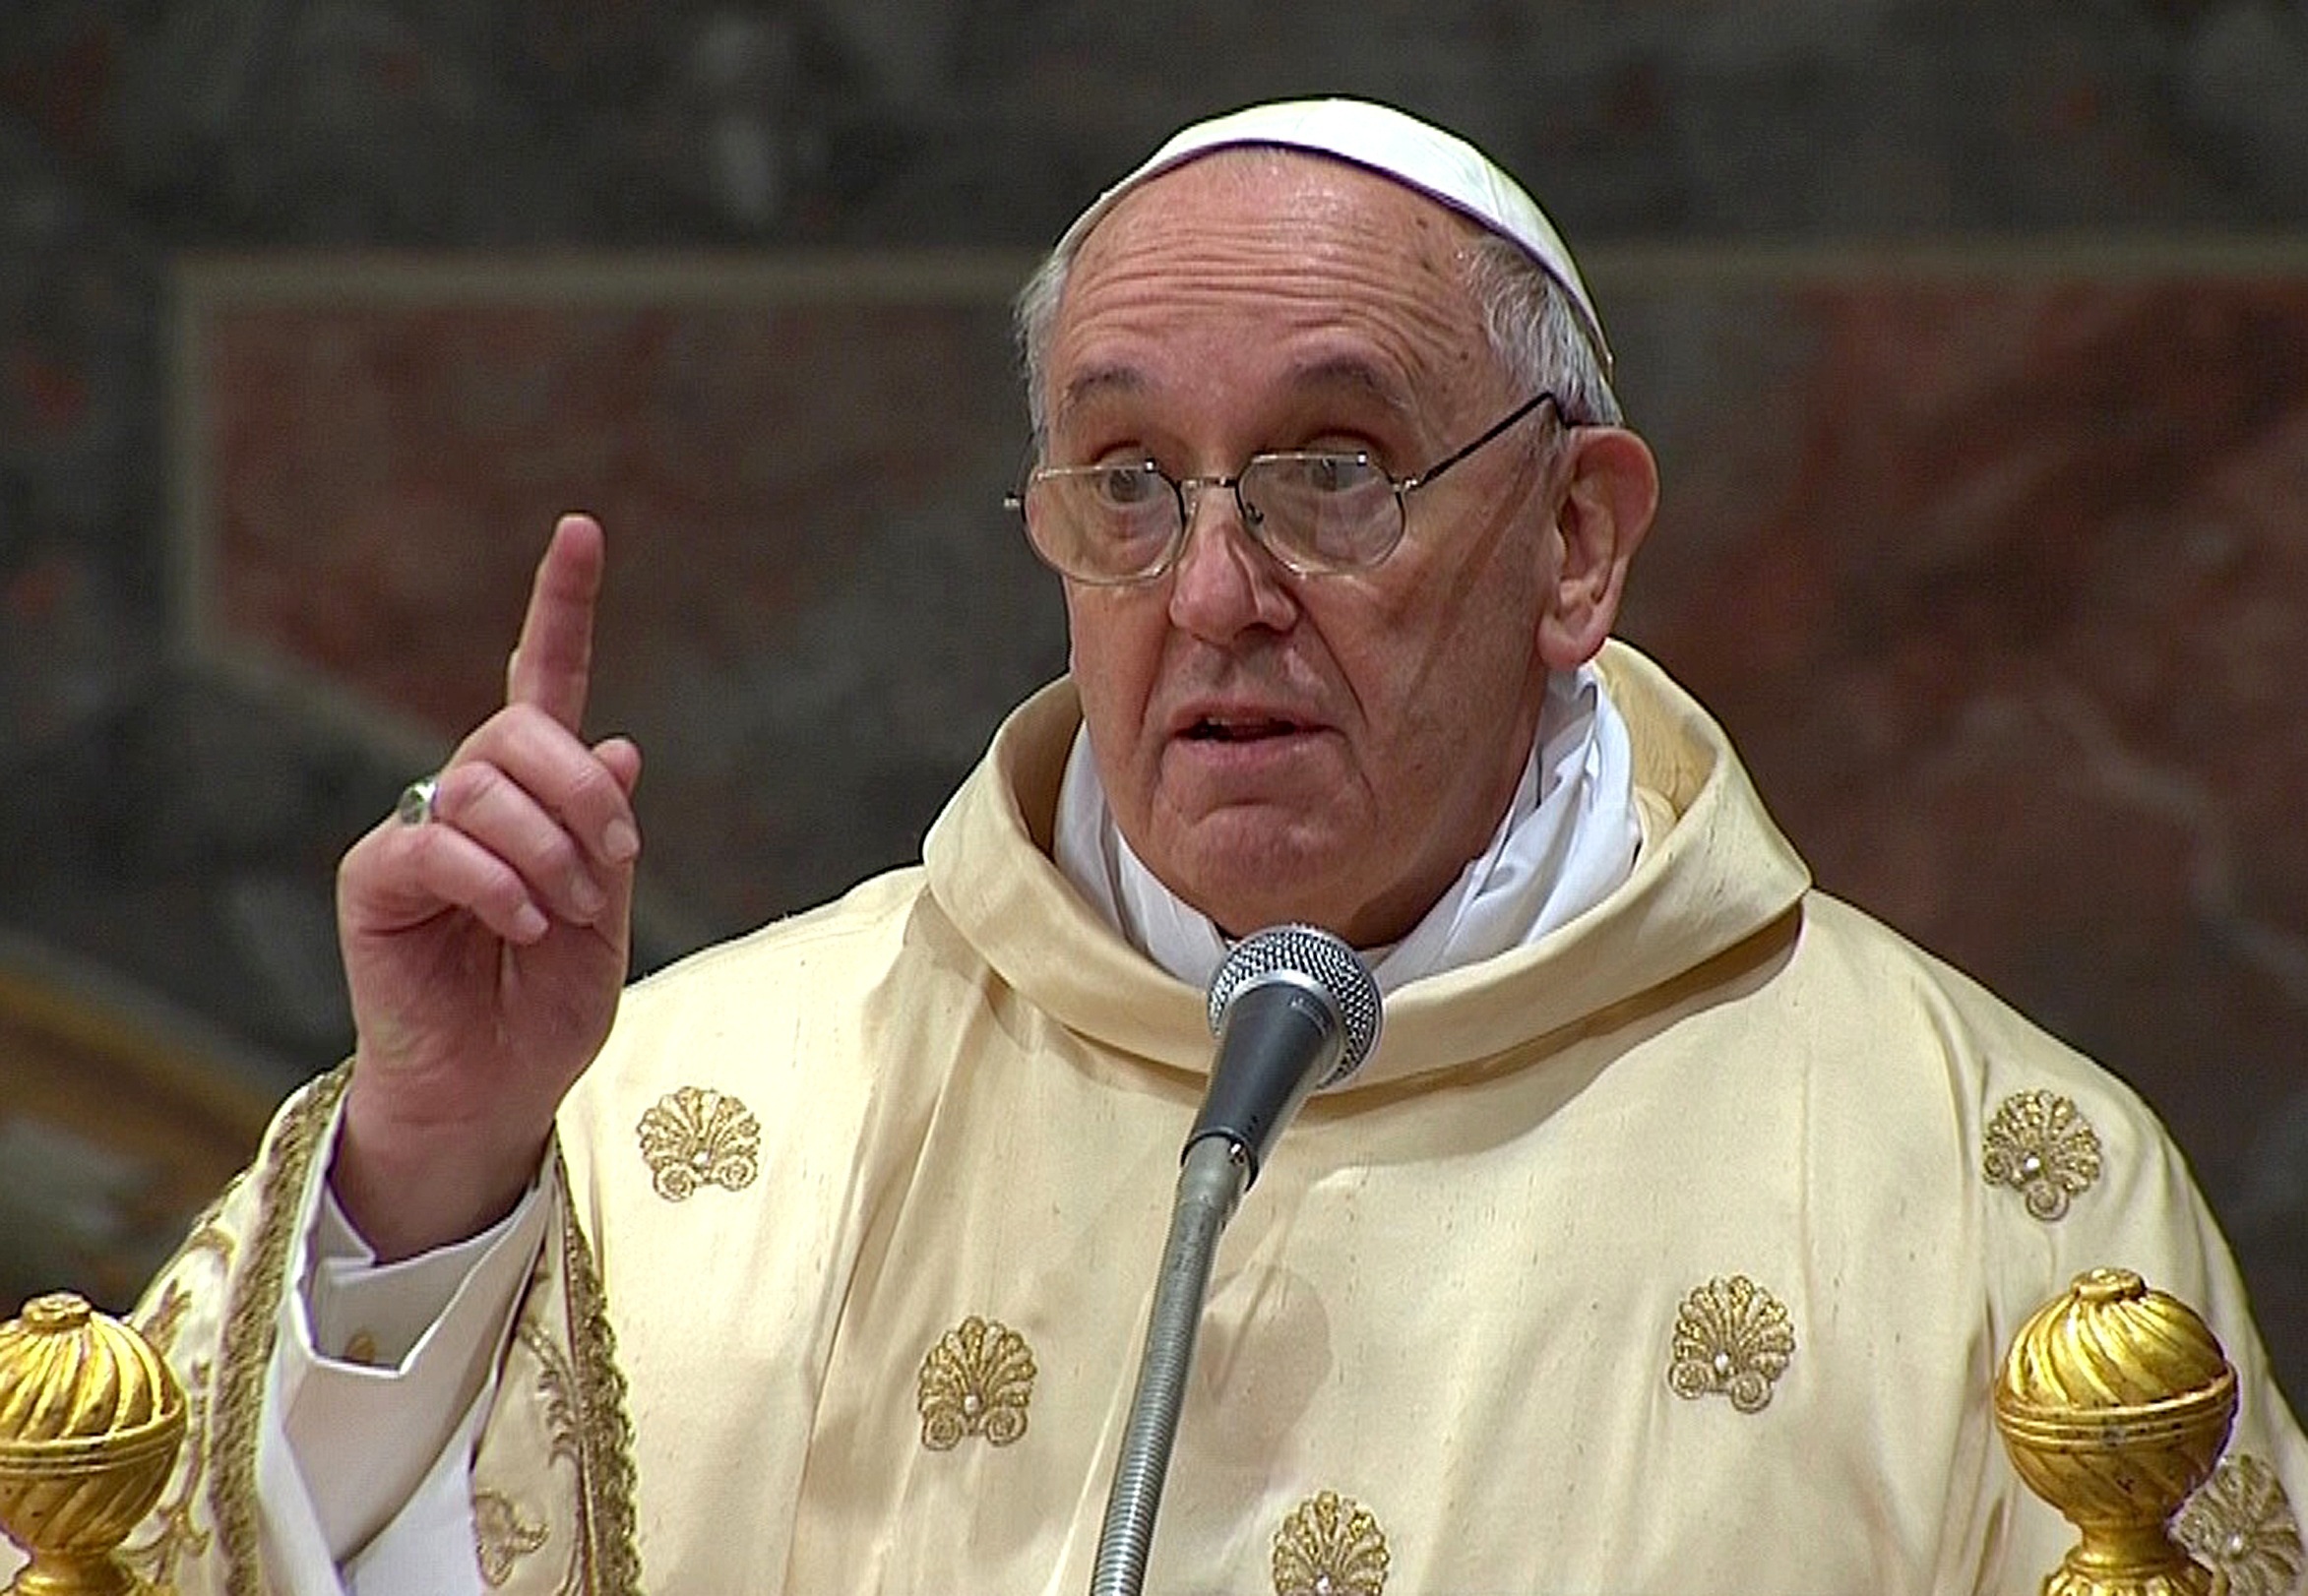 Πάπας προς συμπατριώτες του: Μην έρθετε στην ενθρόνιση, δώστε τα χρήματα στους φτωχούς